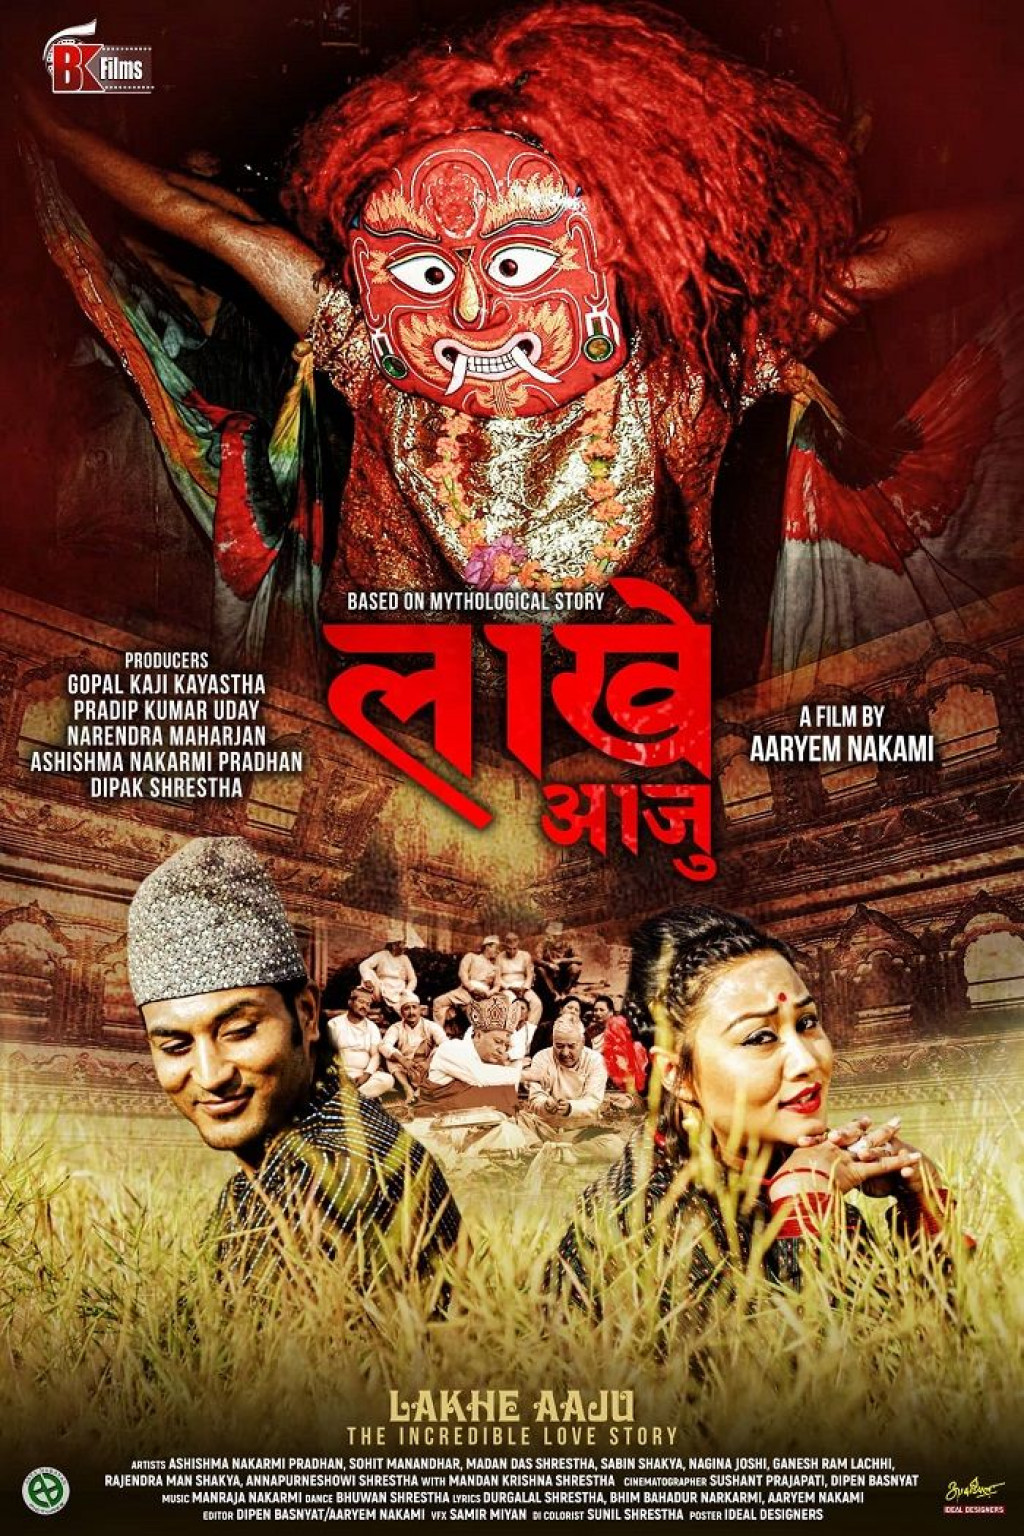 Poster For Nepali Film Lakhe Released Nepalnews